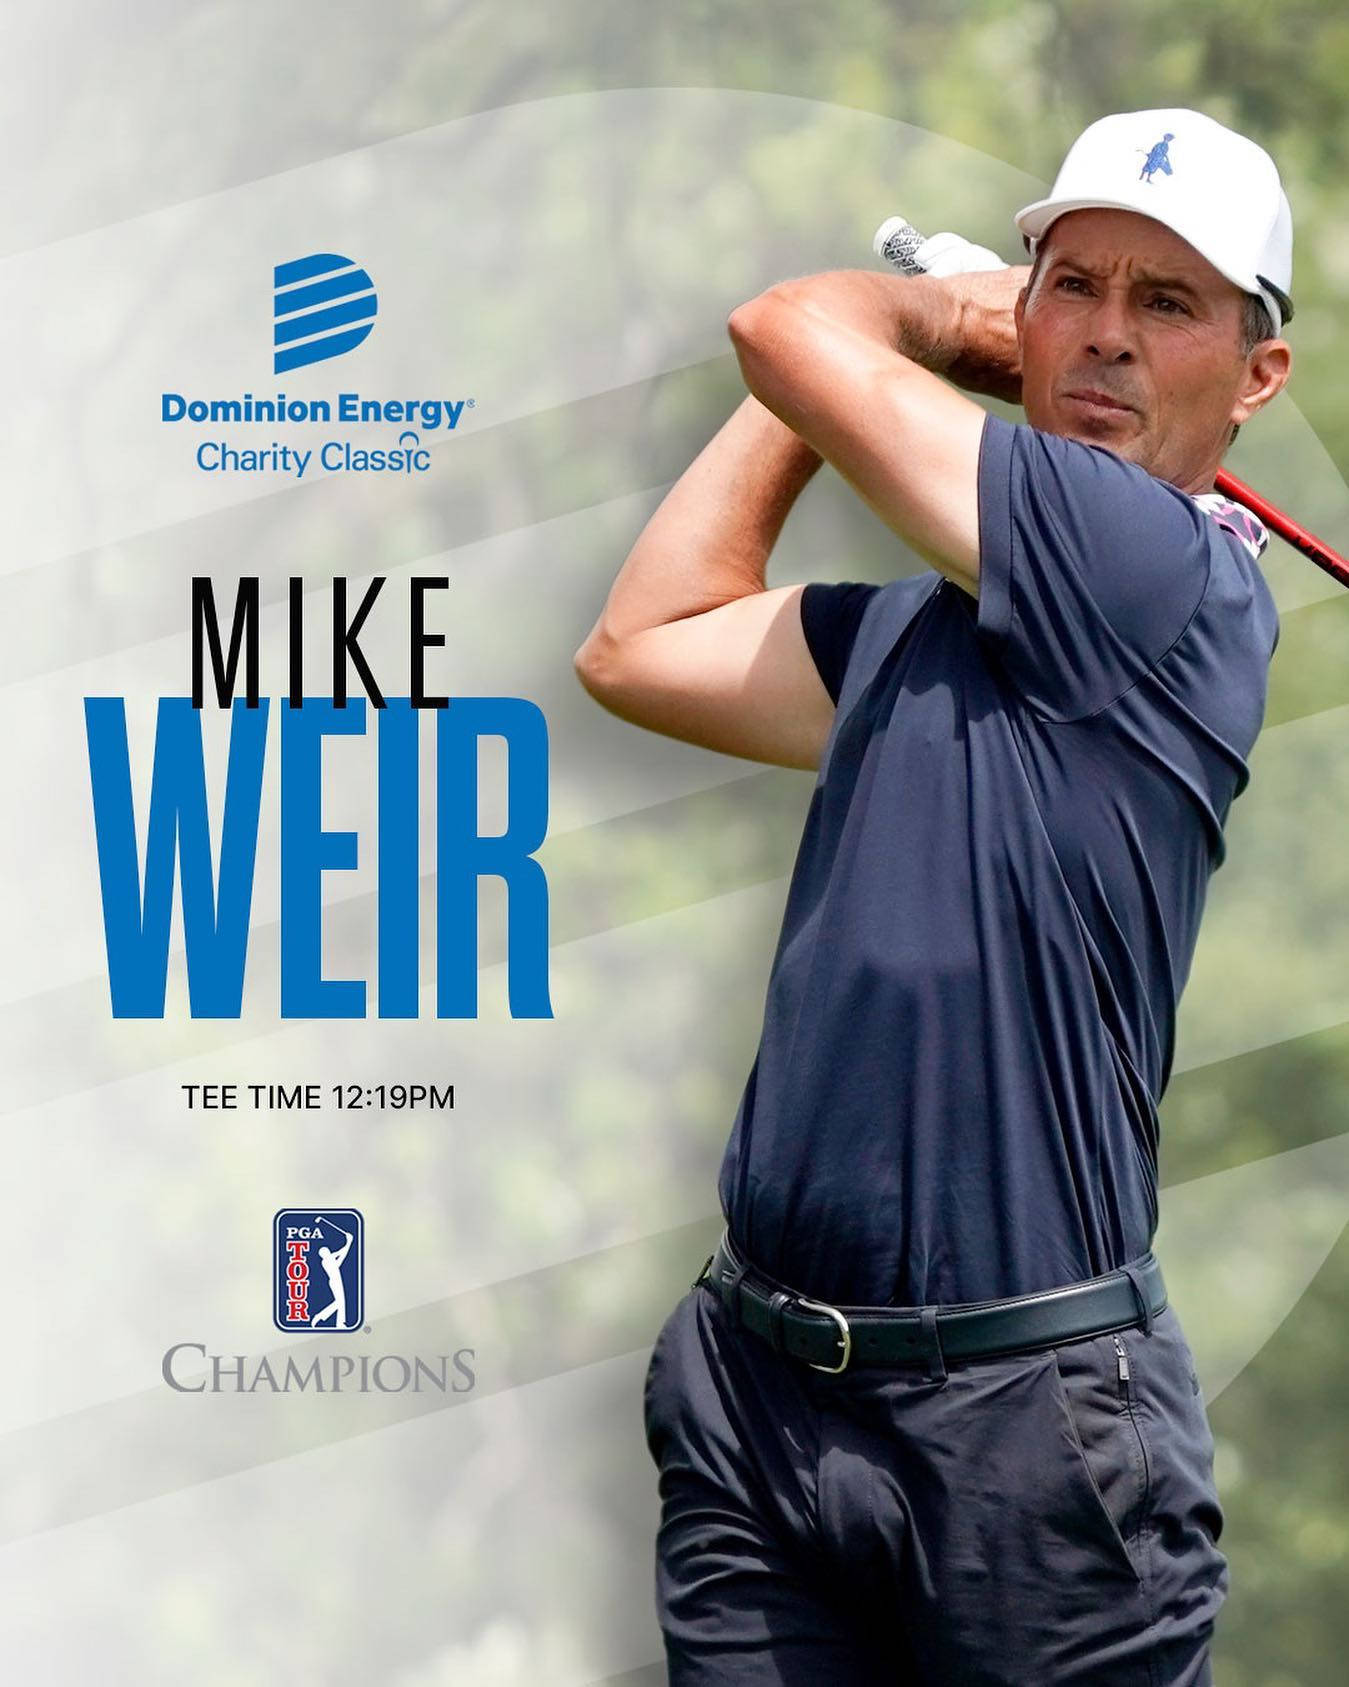 Mike Weir Golf Match Poster Wallpaper